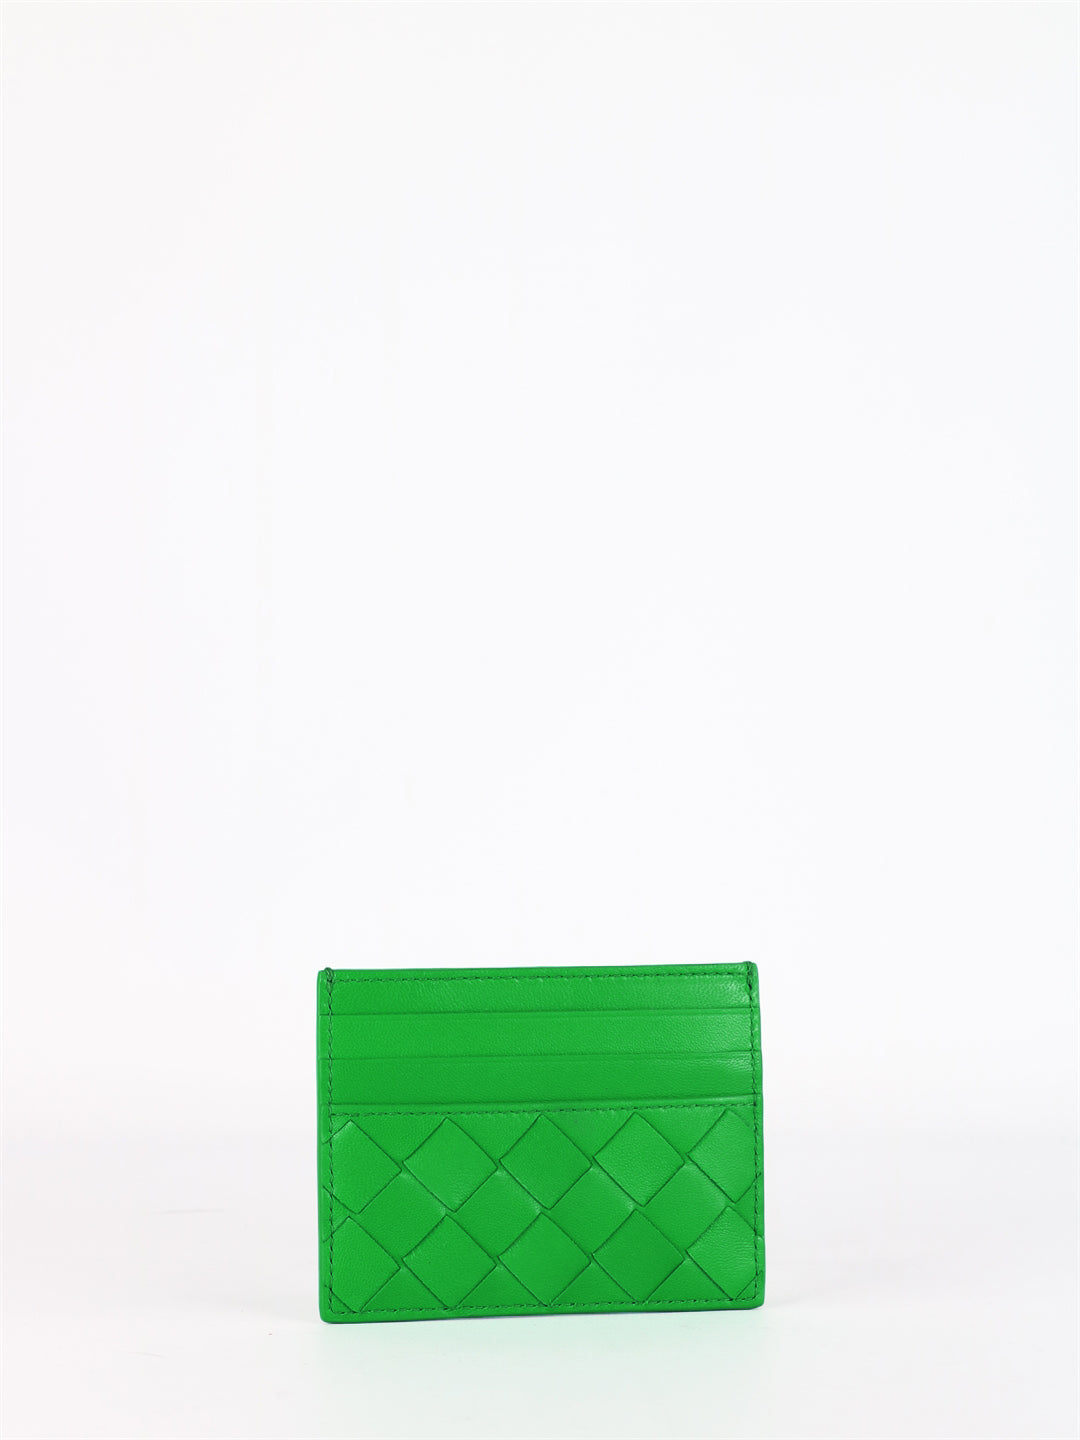 Bottega Veneta Intrecciato Card Holder In Green